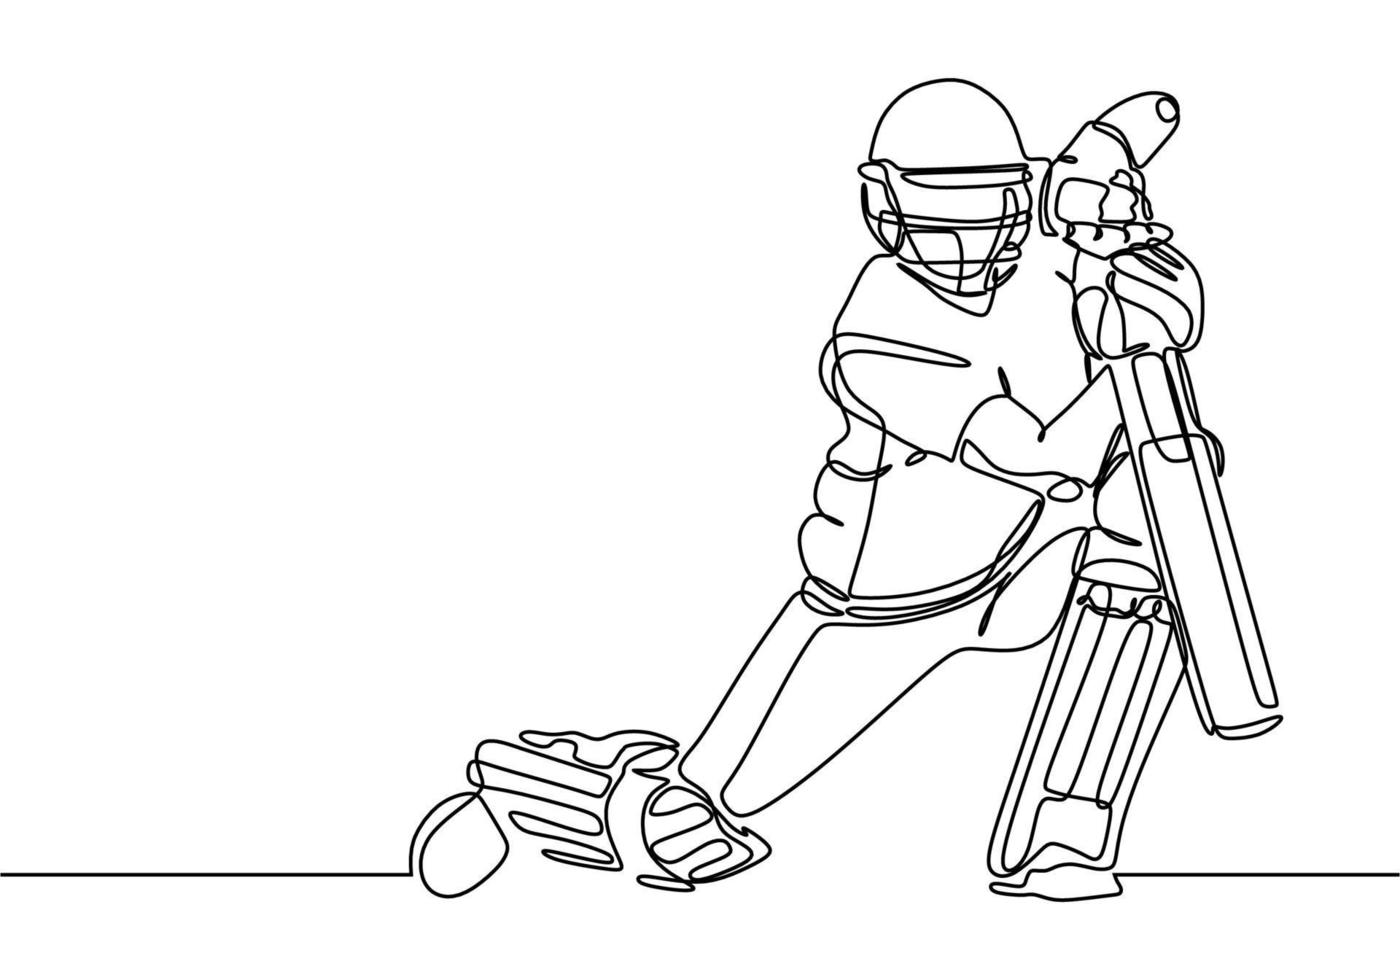 Cricket-Sportspieler eine Linie, die eine durchgehende einzelne Linie zeichnet vektor